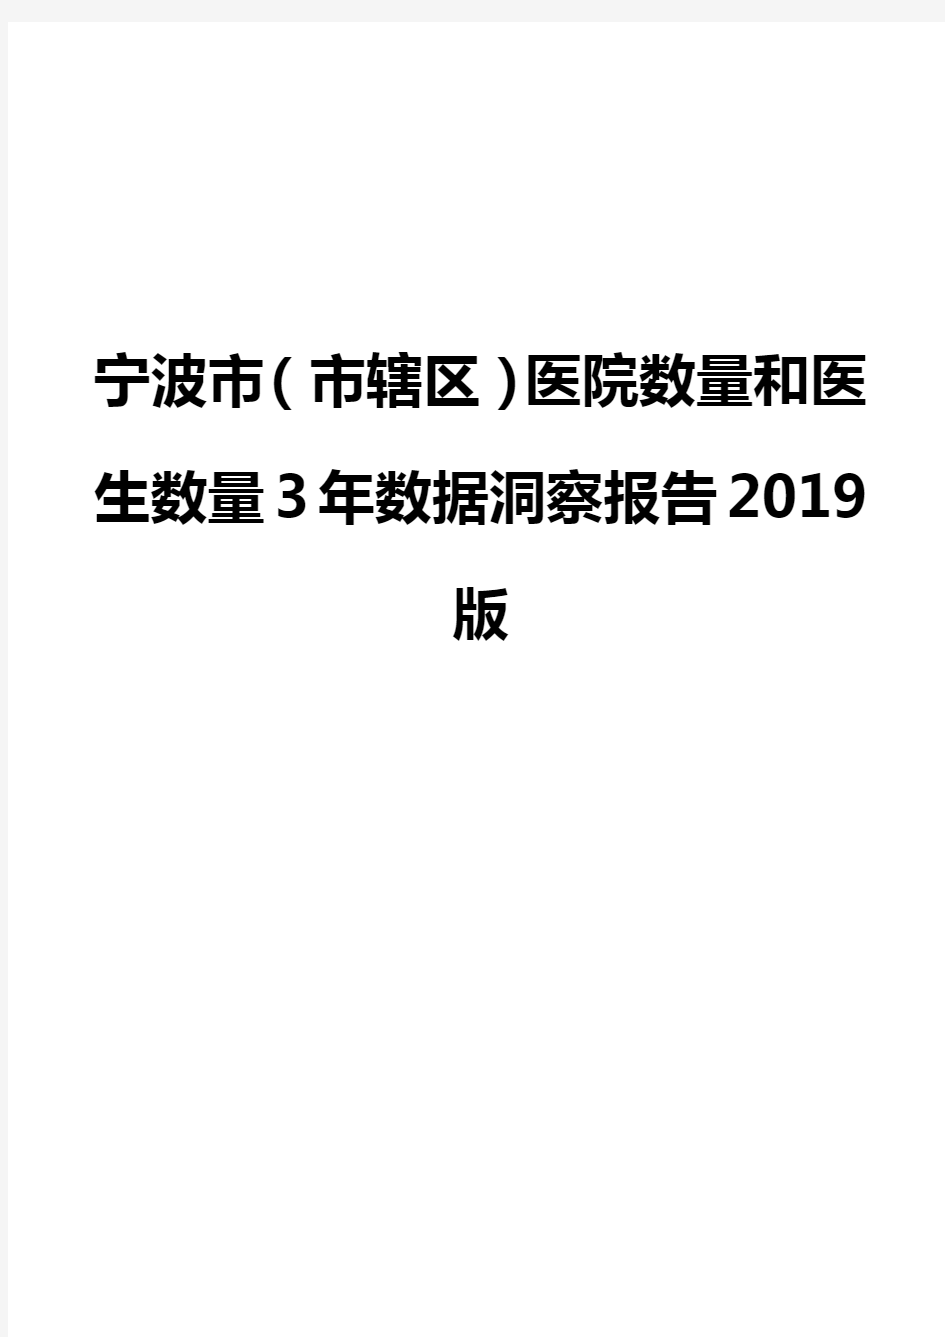 宁波市(市辖区)医院数量和医生数量3年数据洞察报告2019版